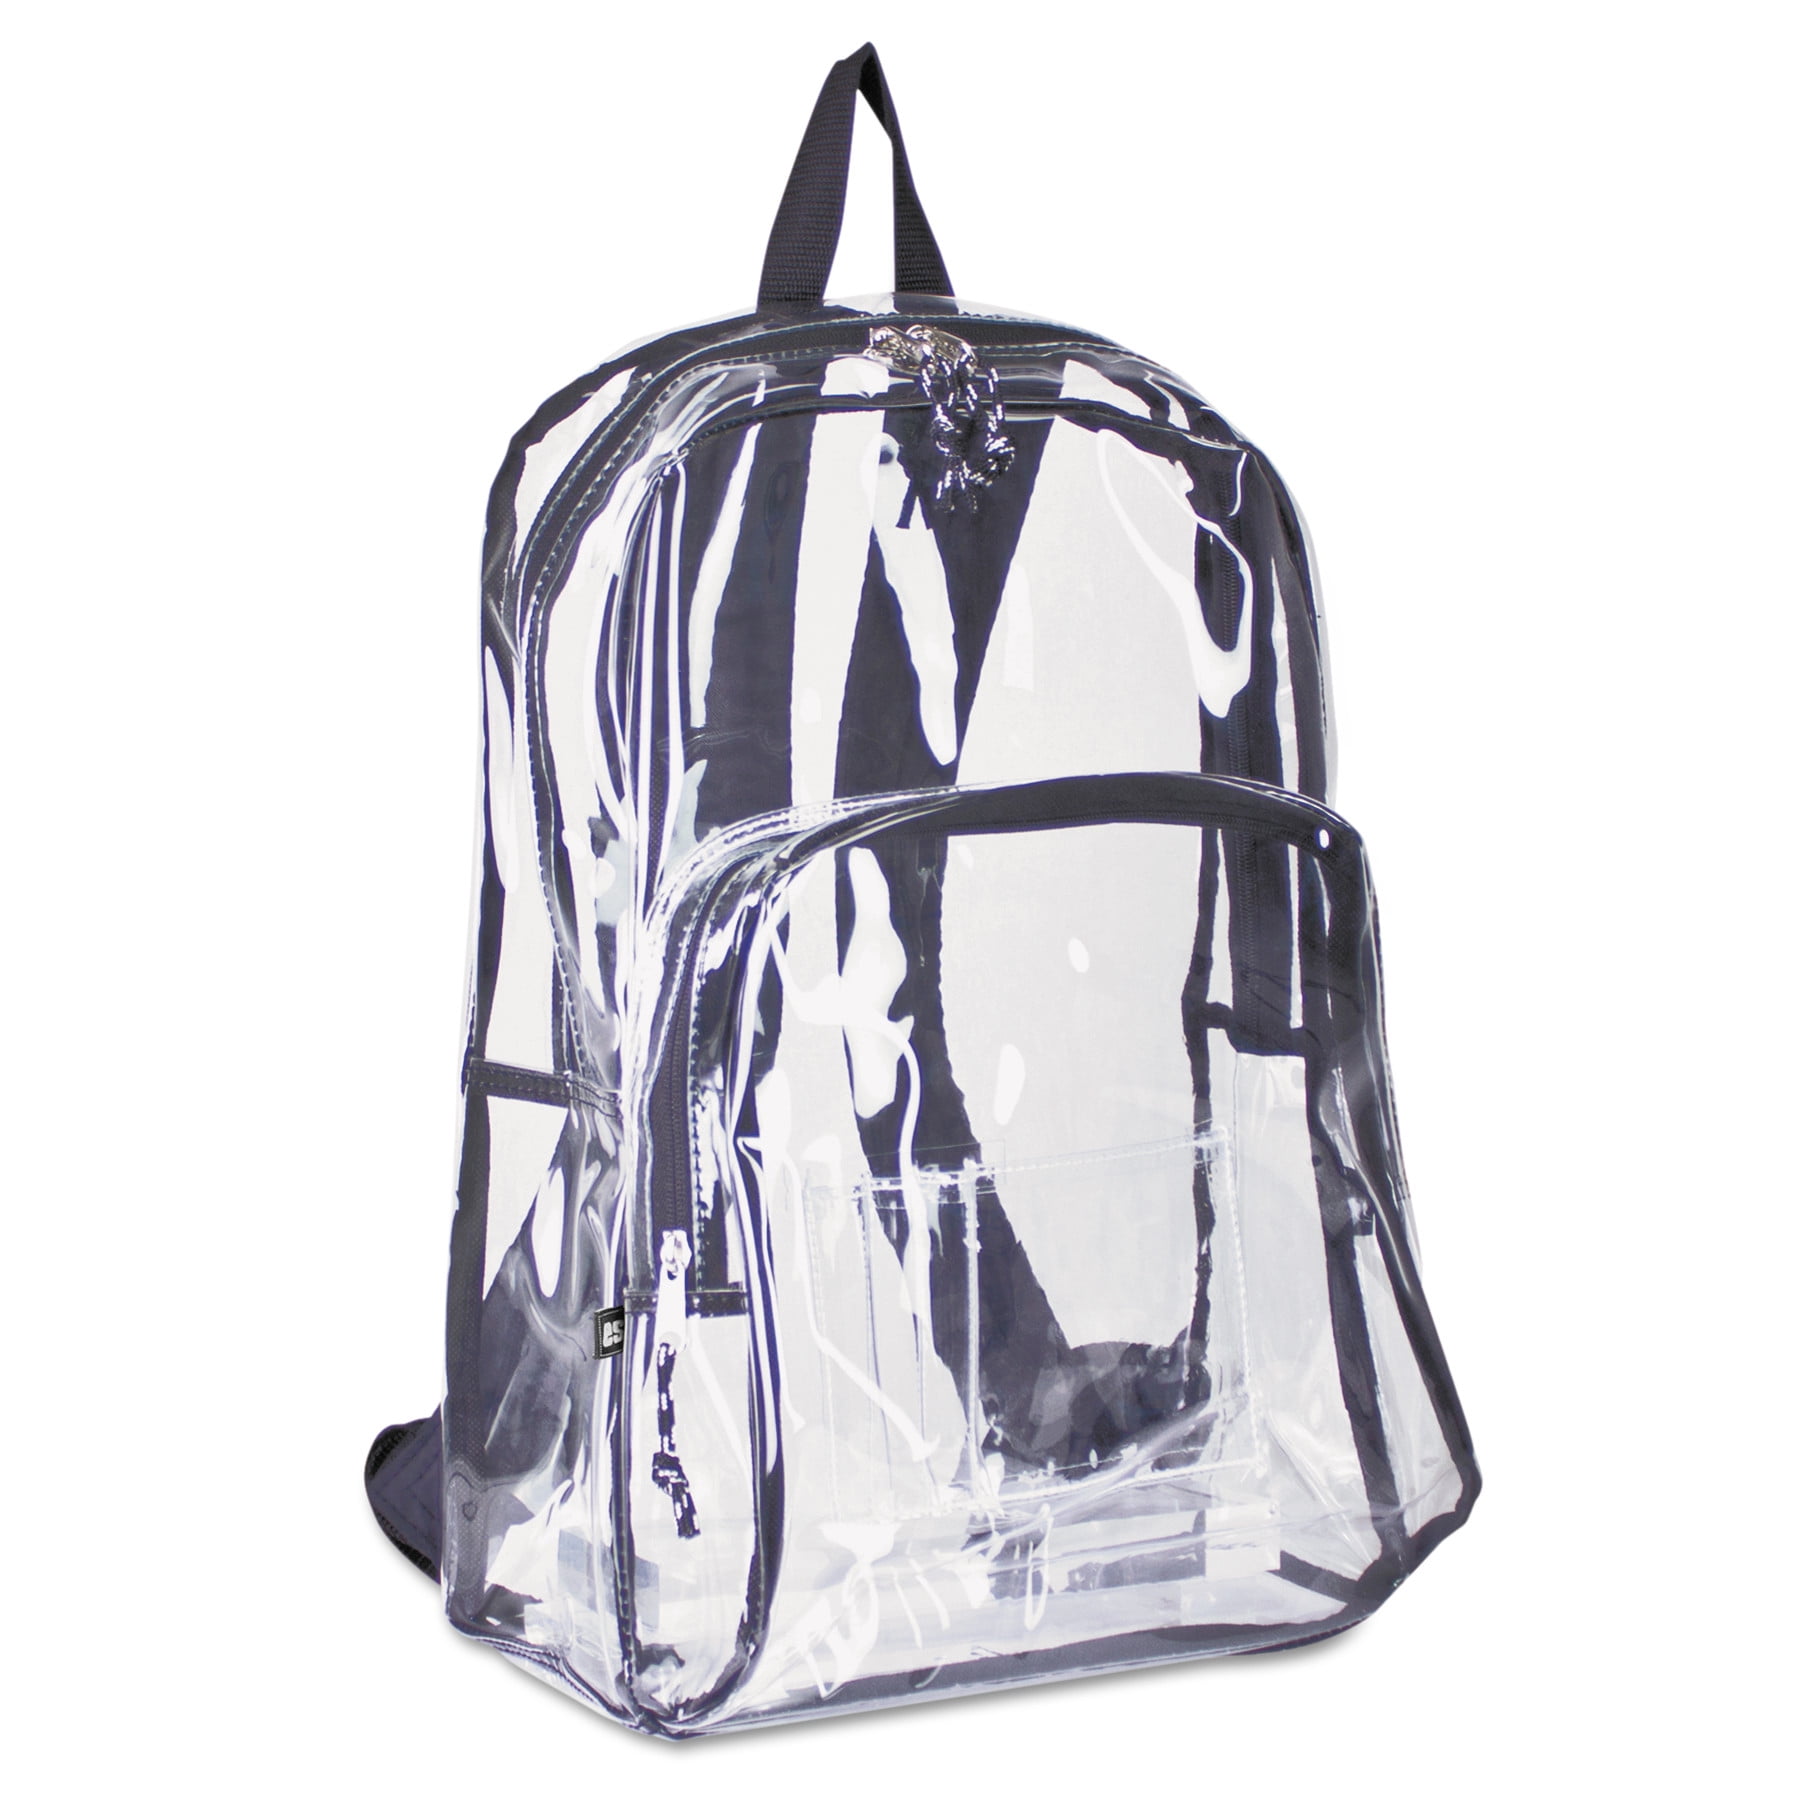 jansport transparent backpack